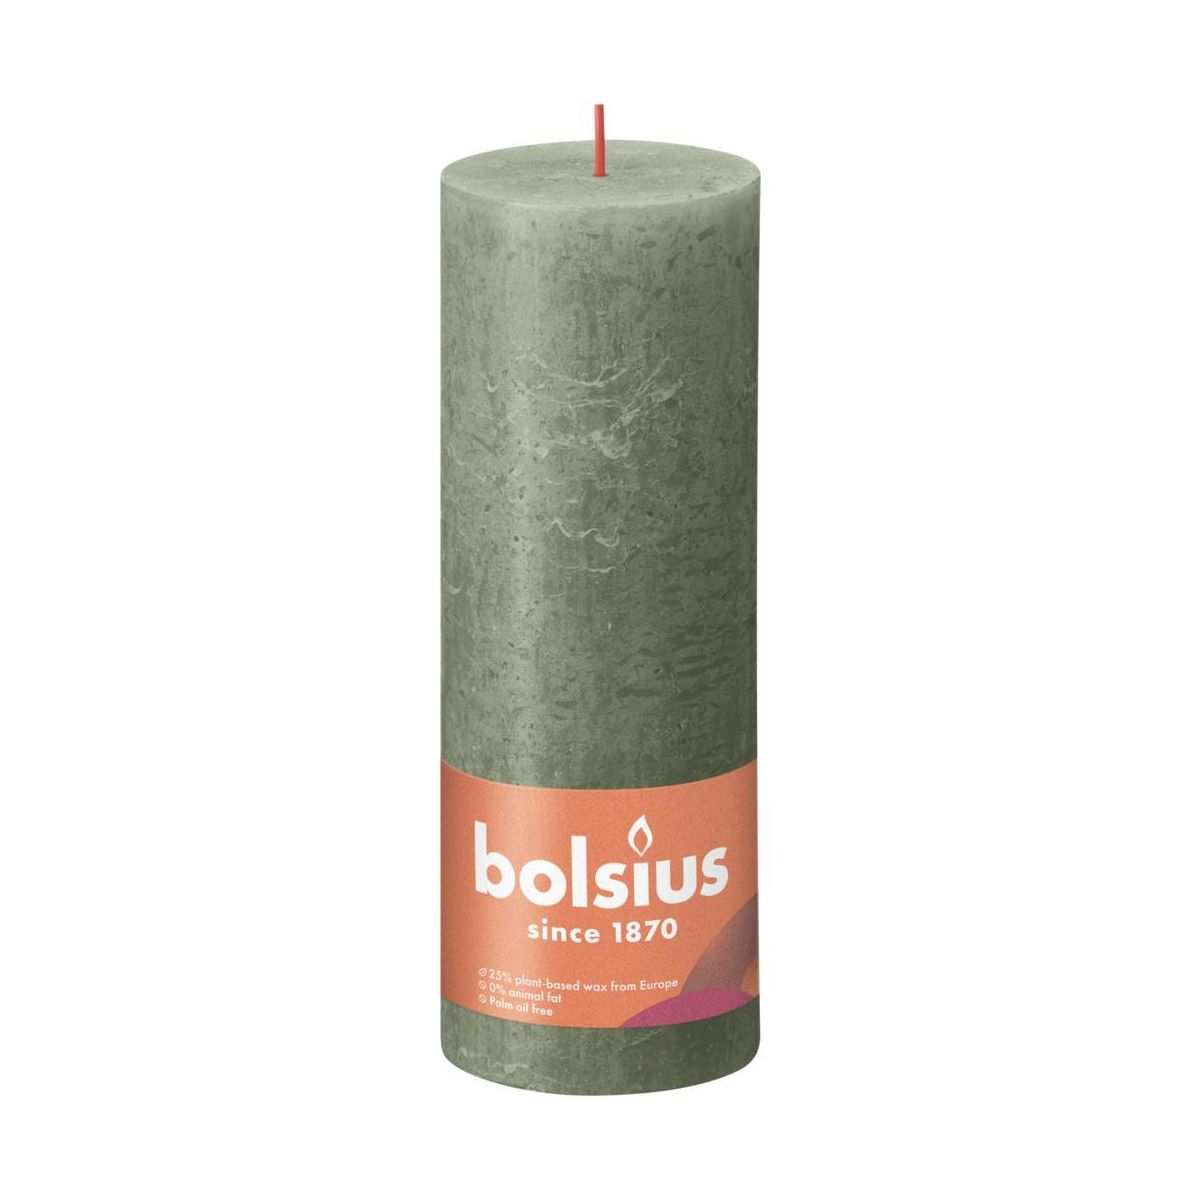 фото Свеча bolsius rustic 19х6,8 см shine оливковый